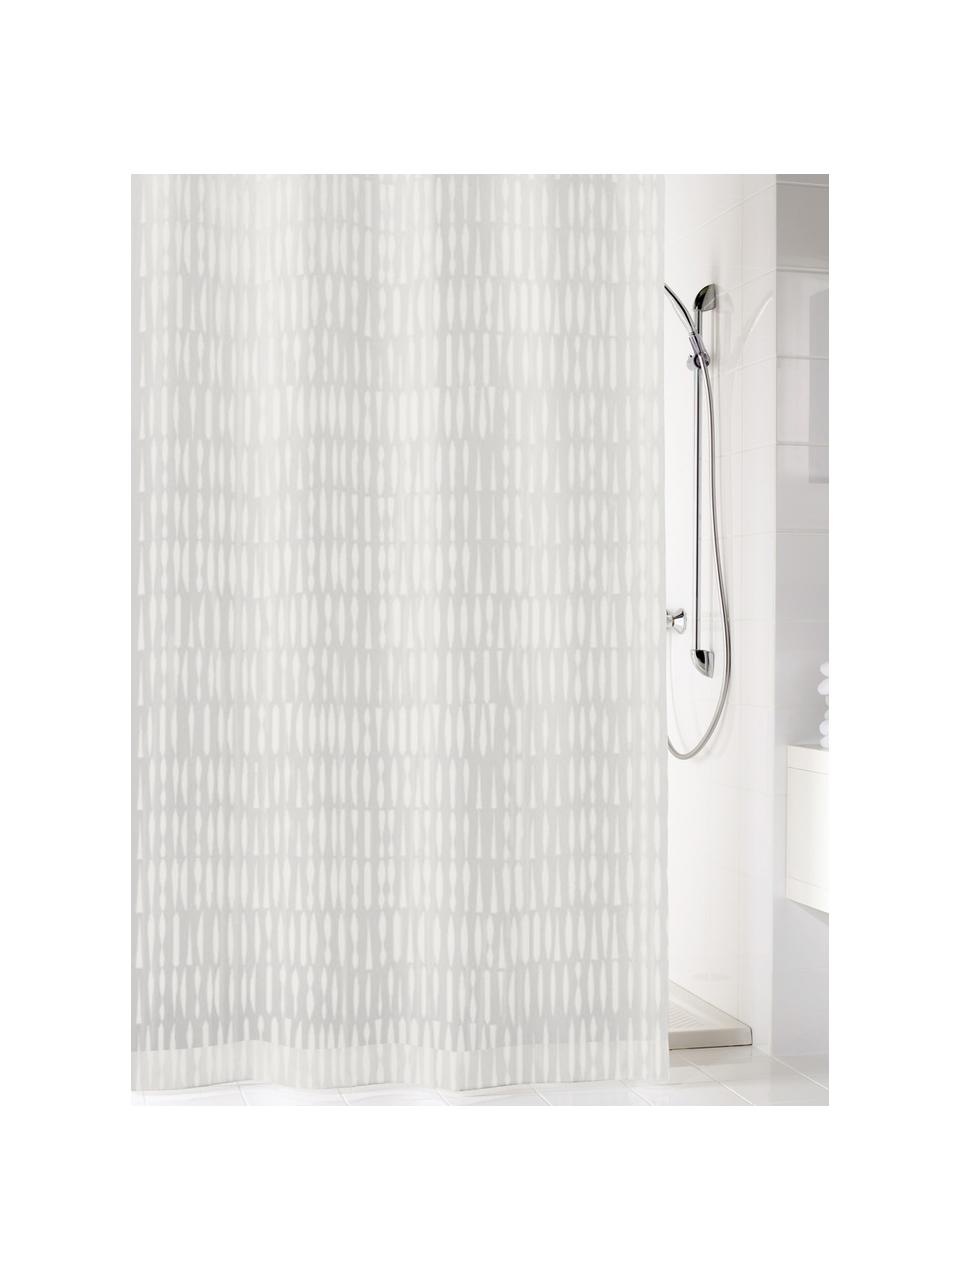 Zasłona prysznicowa Zora, Eko tworzywo sztuczne (PEVA), bez PVC
Produkt wodoodporny, Transparentny, biały, S 180 x D 200 cm